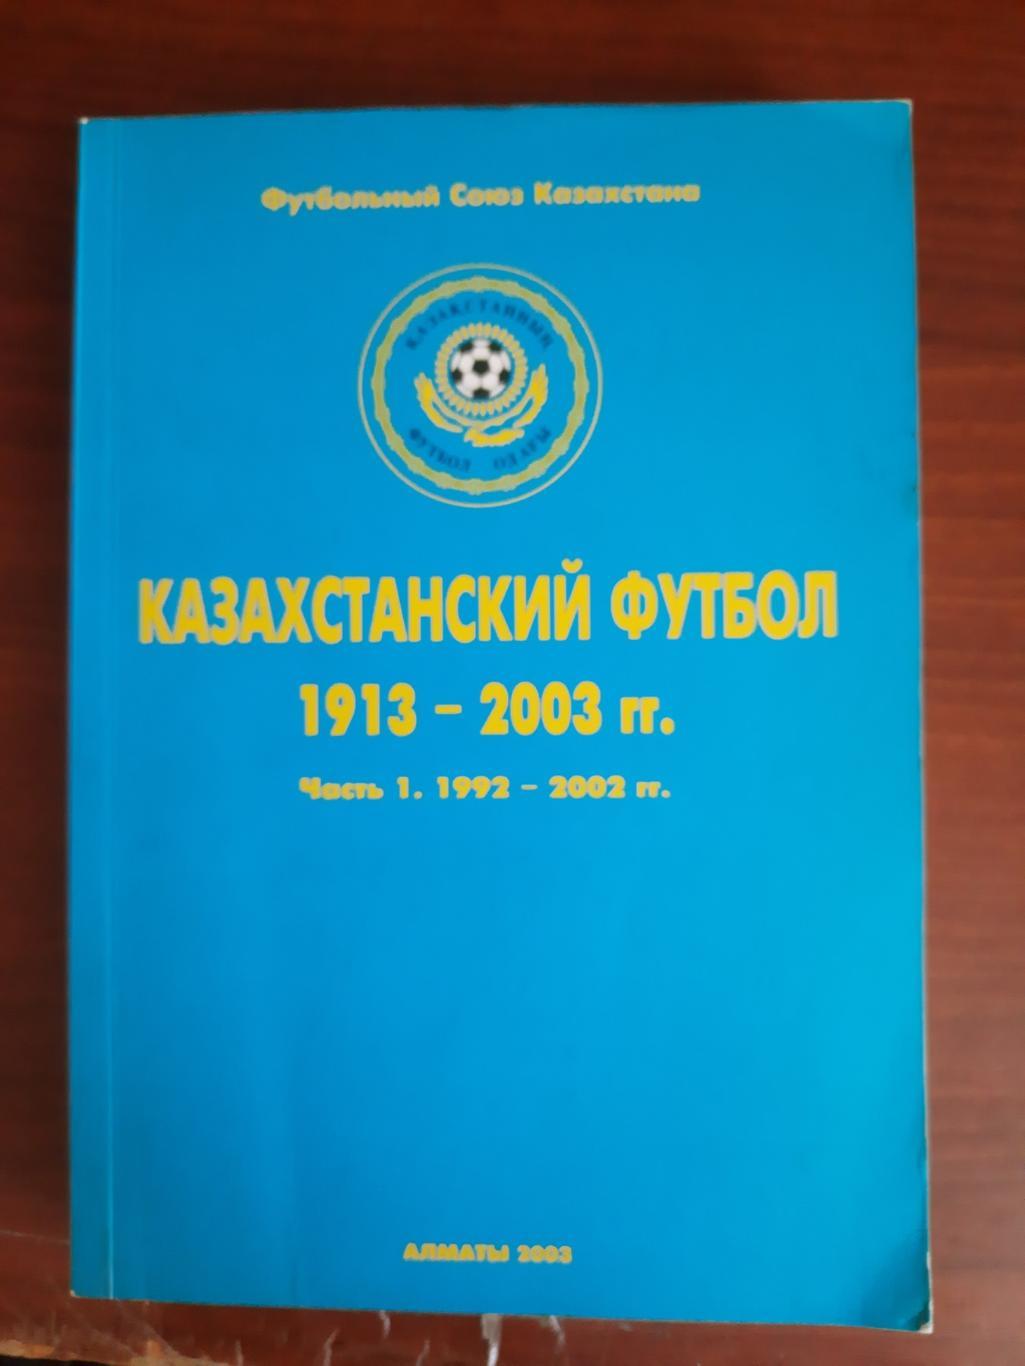 Казахстанский футбол. Часть 1 1992-2002